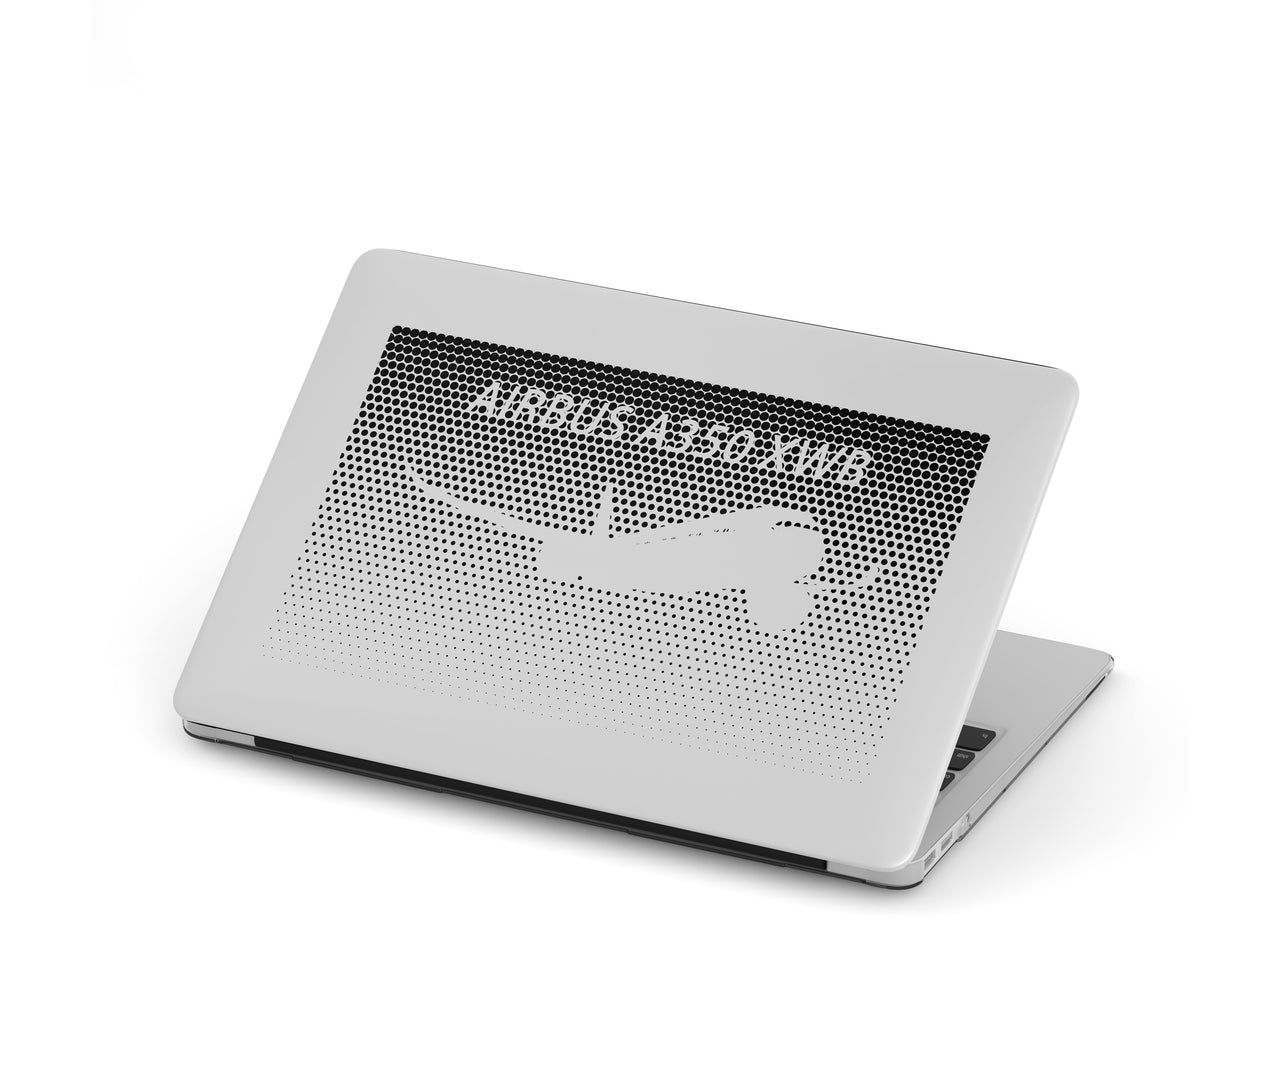 Airbus A350XWB & Dots Designed Macbook Cases